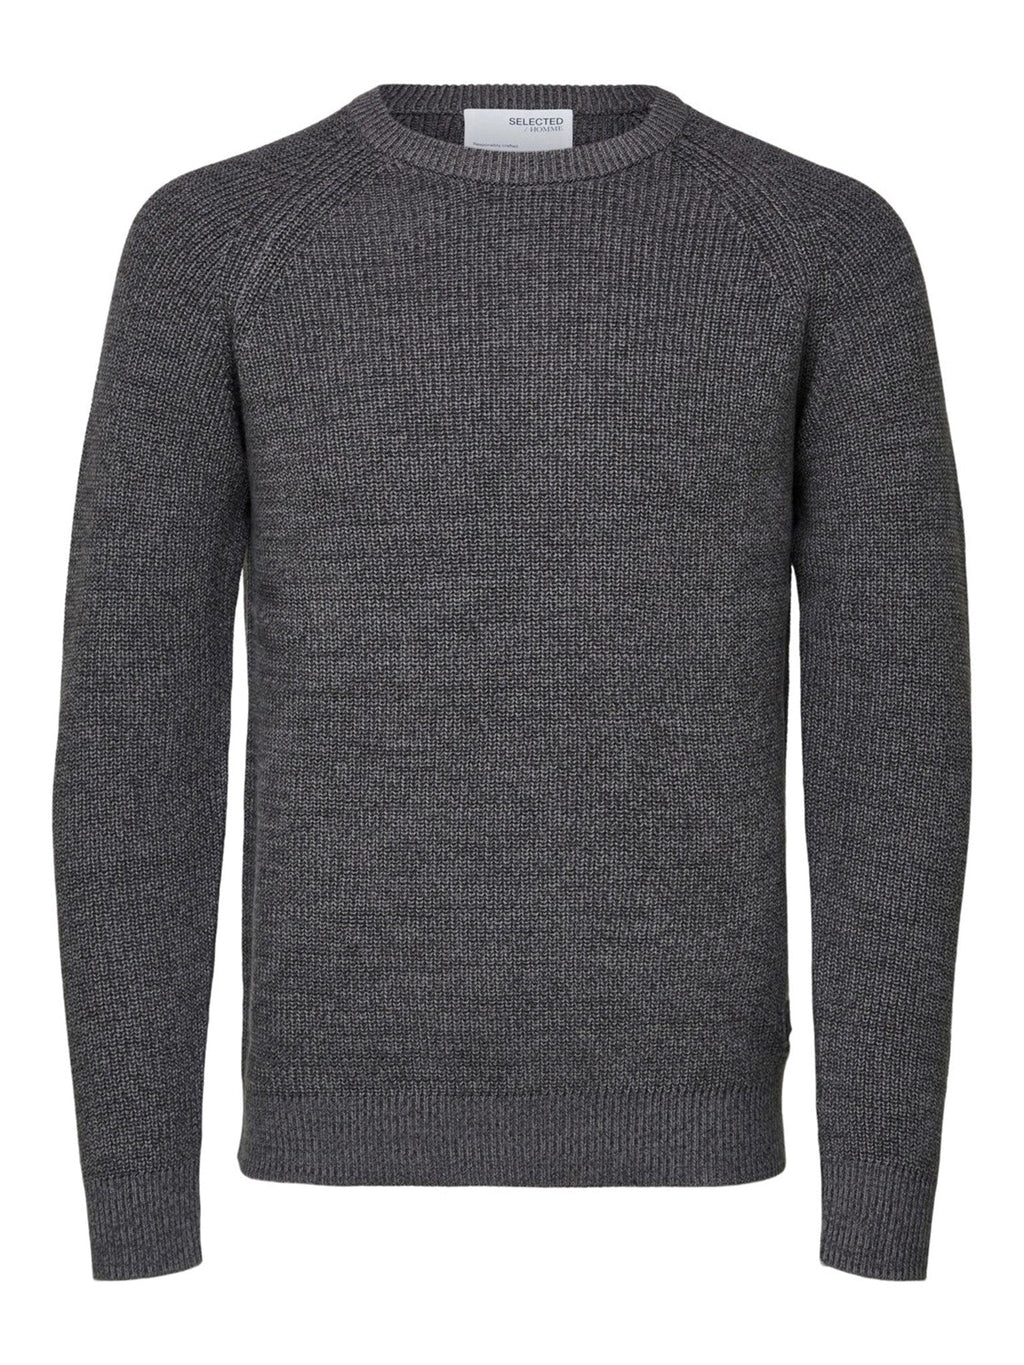 Irven Knit Sweater - Grigio scuro